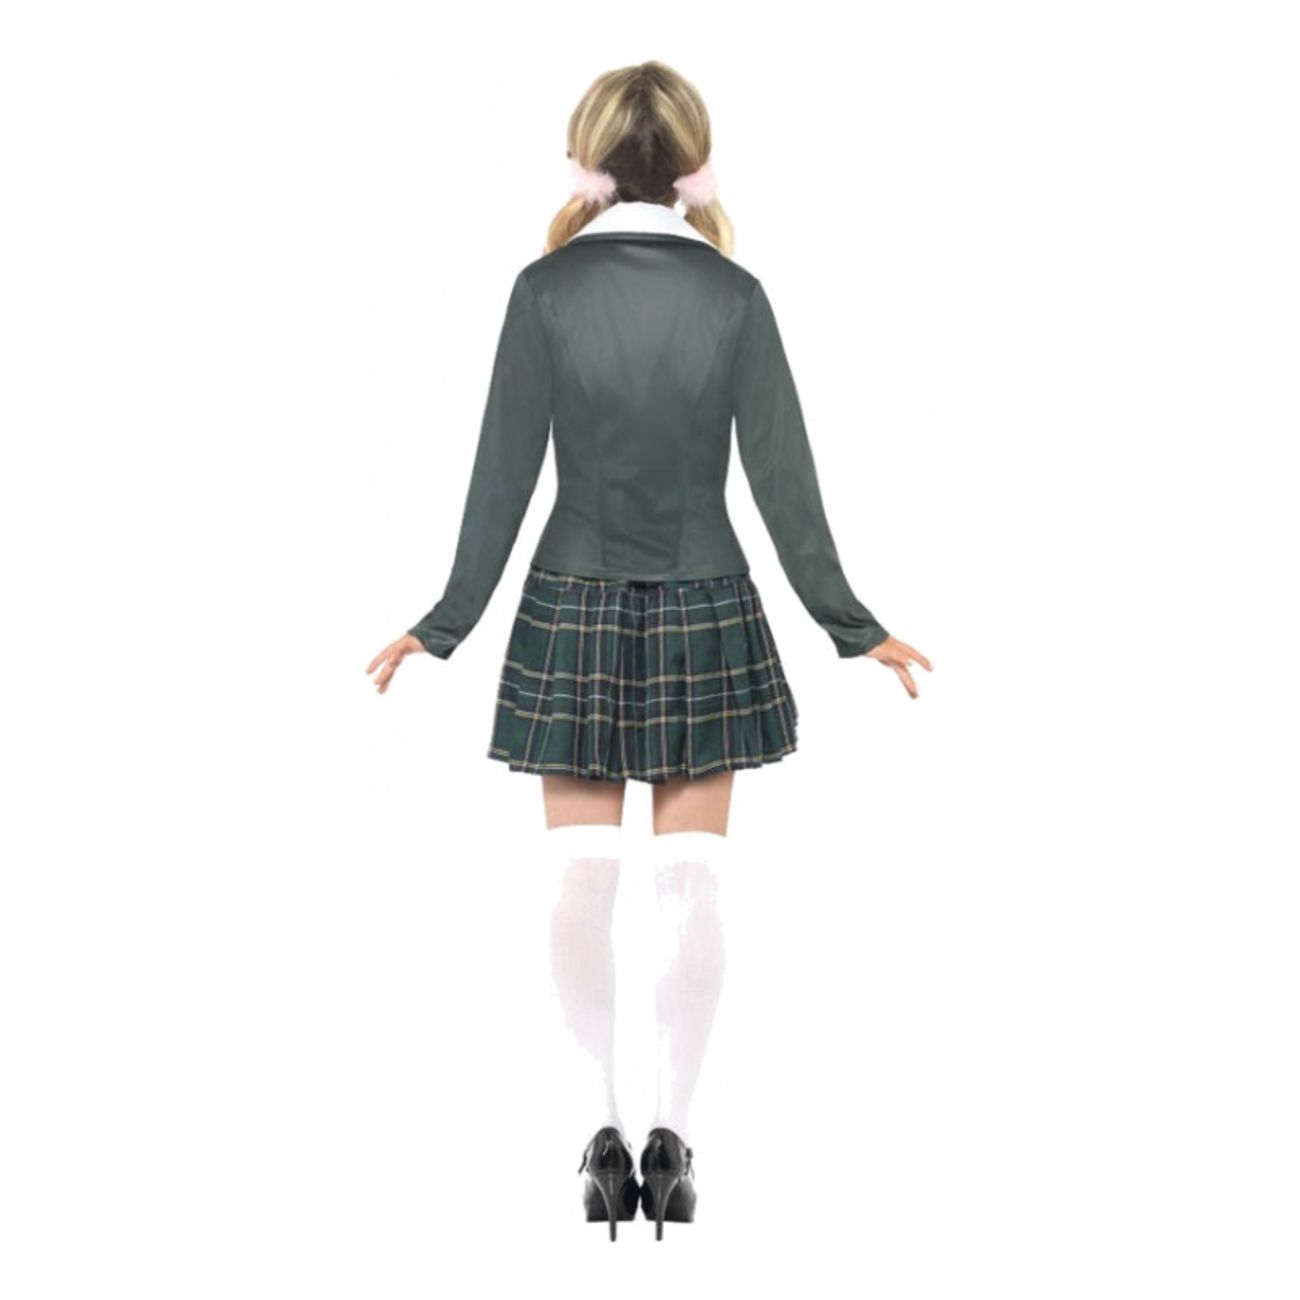 schoolgirl-costume-medium-3